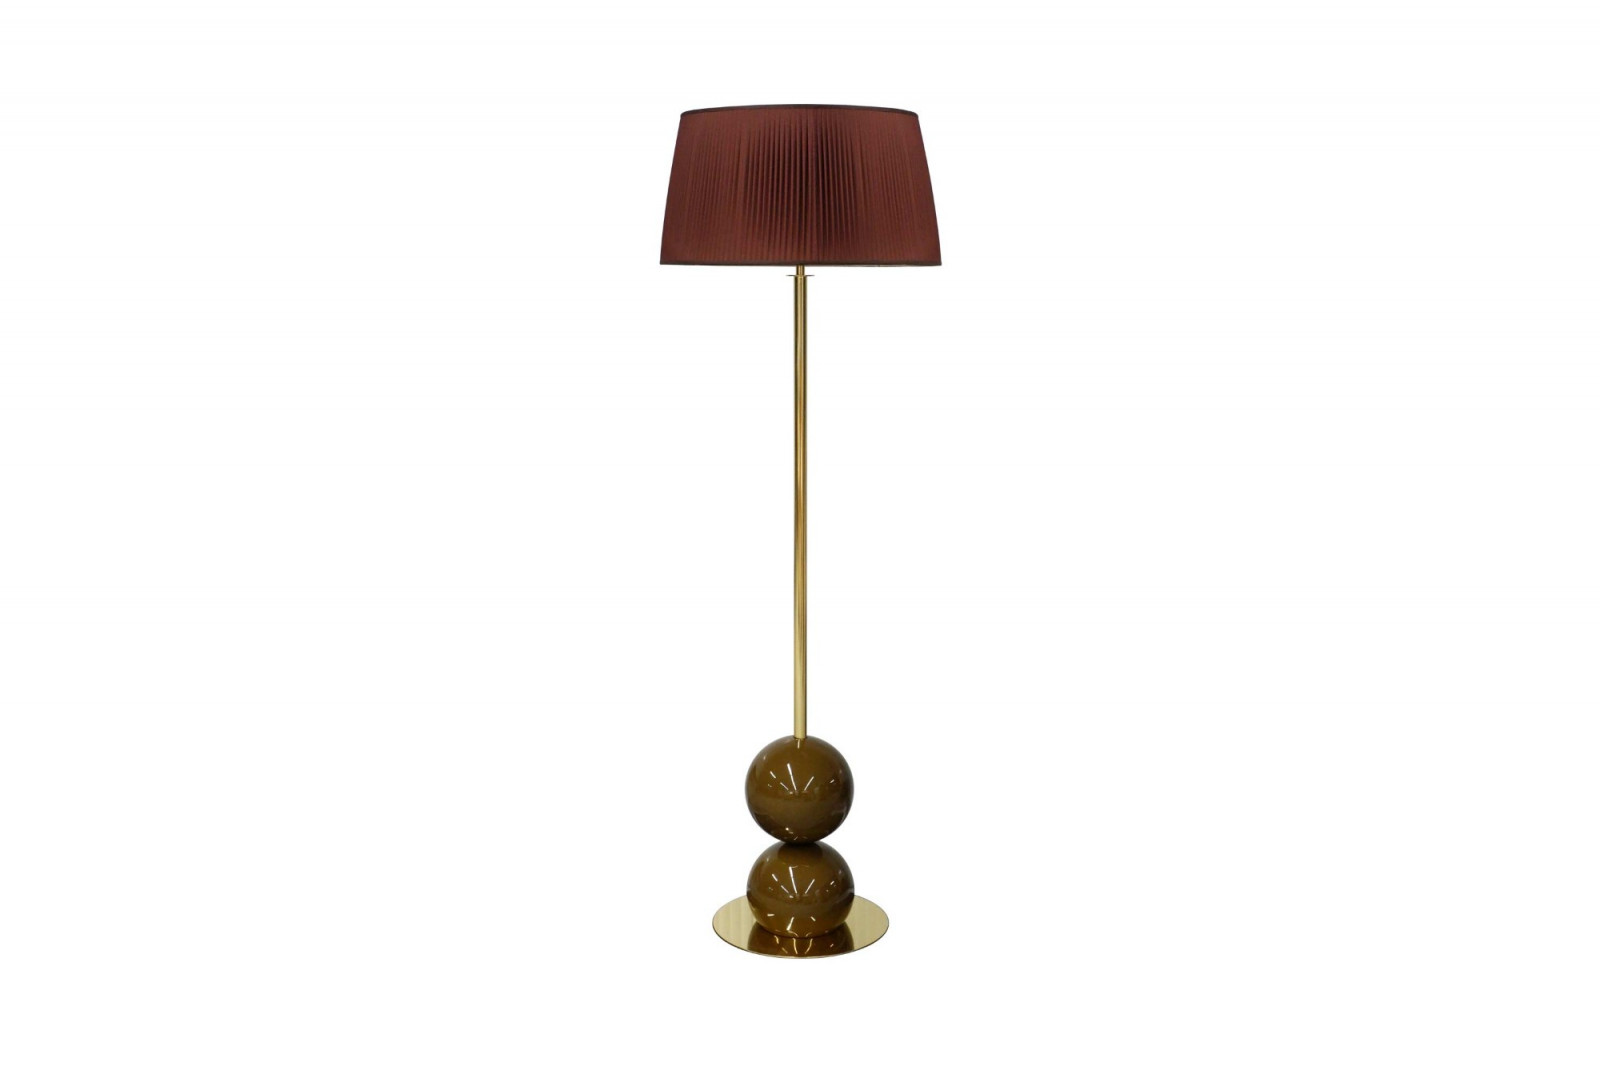 floor-lamp-elegant-modern-luxurious-brass-brown-museu-gansk-2-1651-1600-1400-100